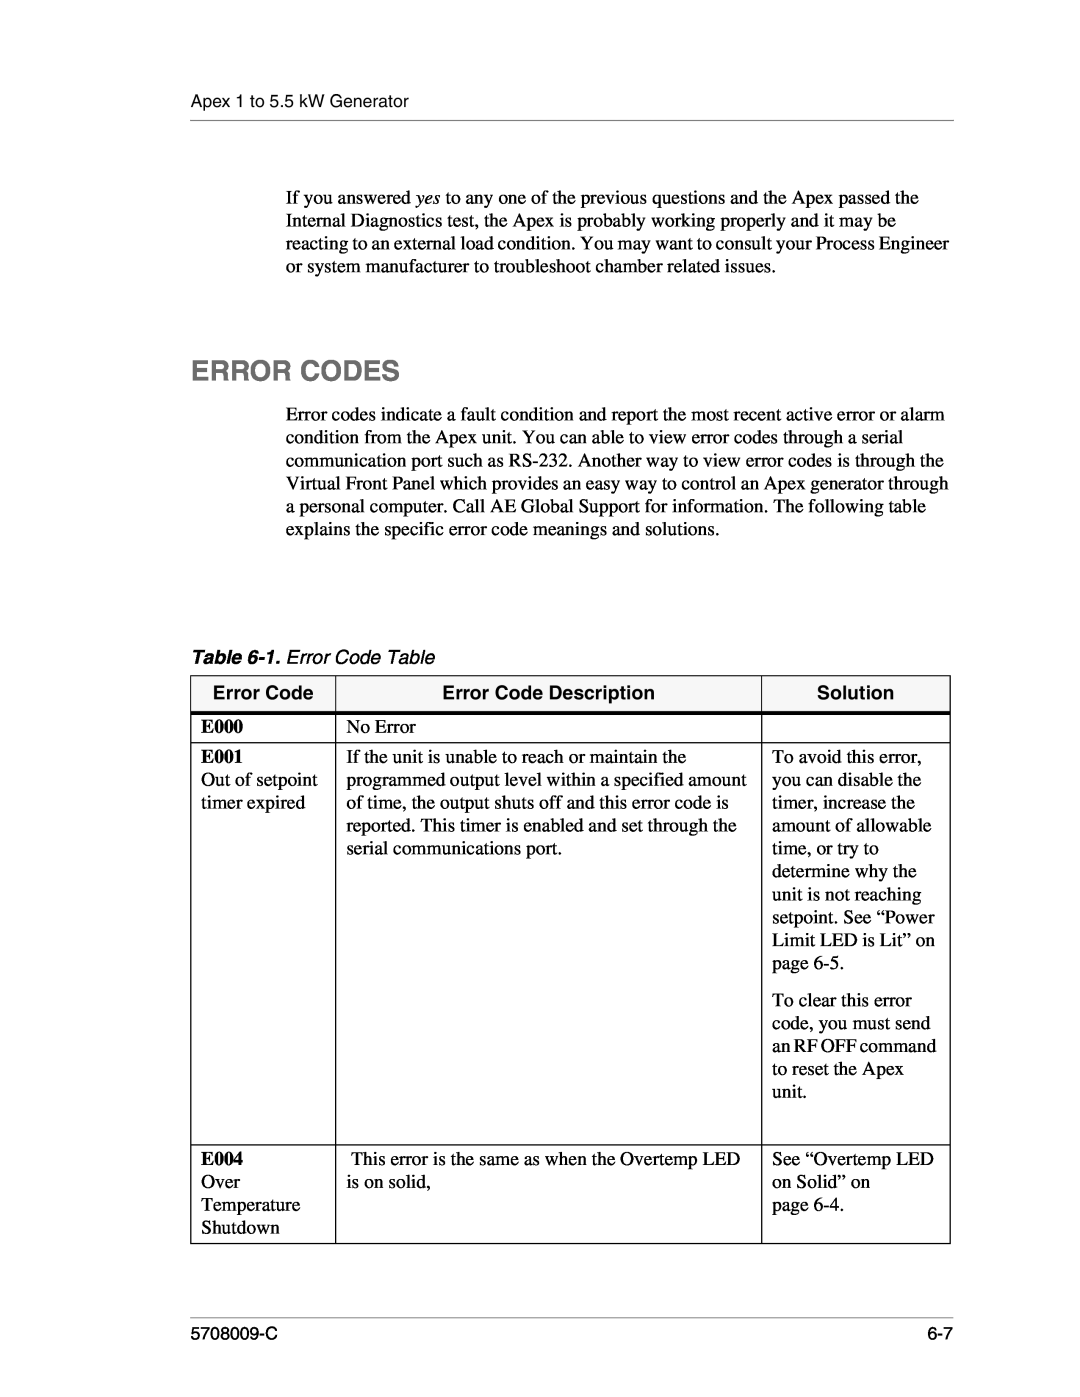 Apex Digital 5708009-C manual Error Codes, 1. Error Code Table, Error Code Description, Solution 